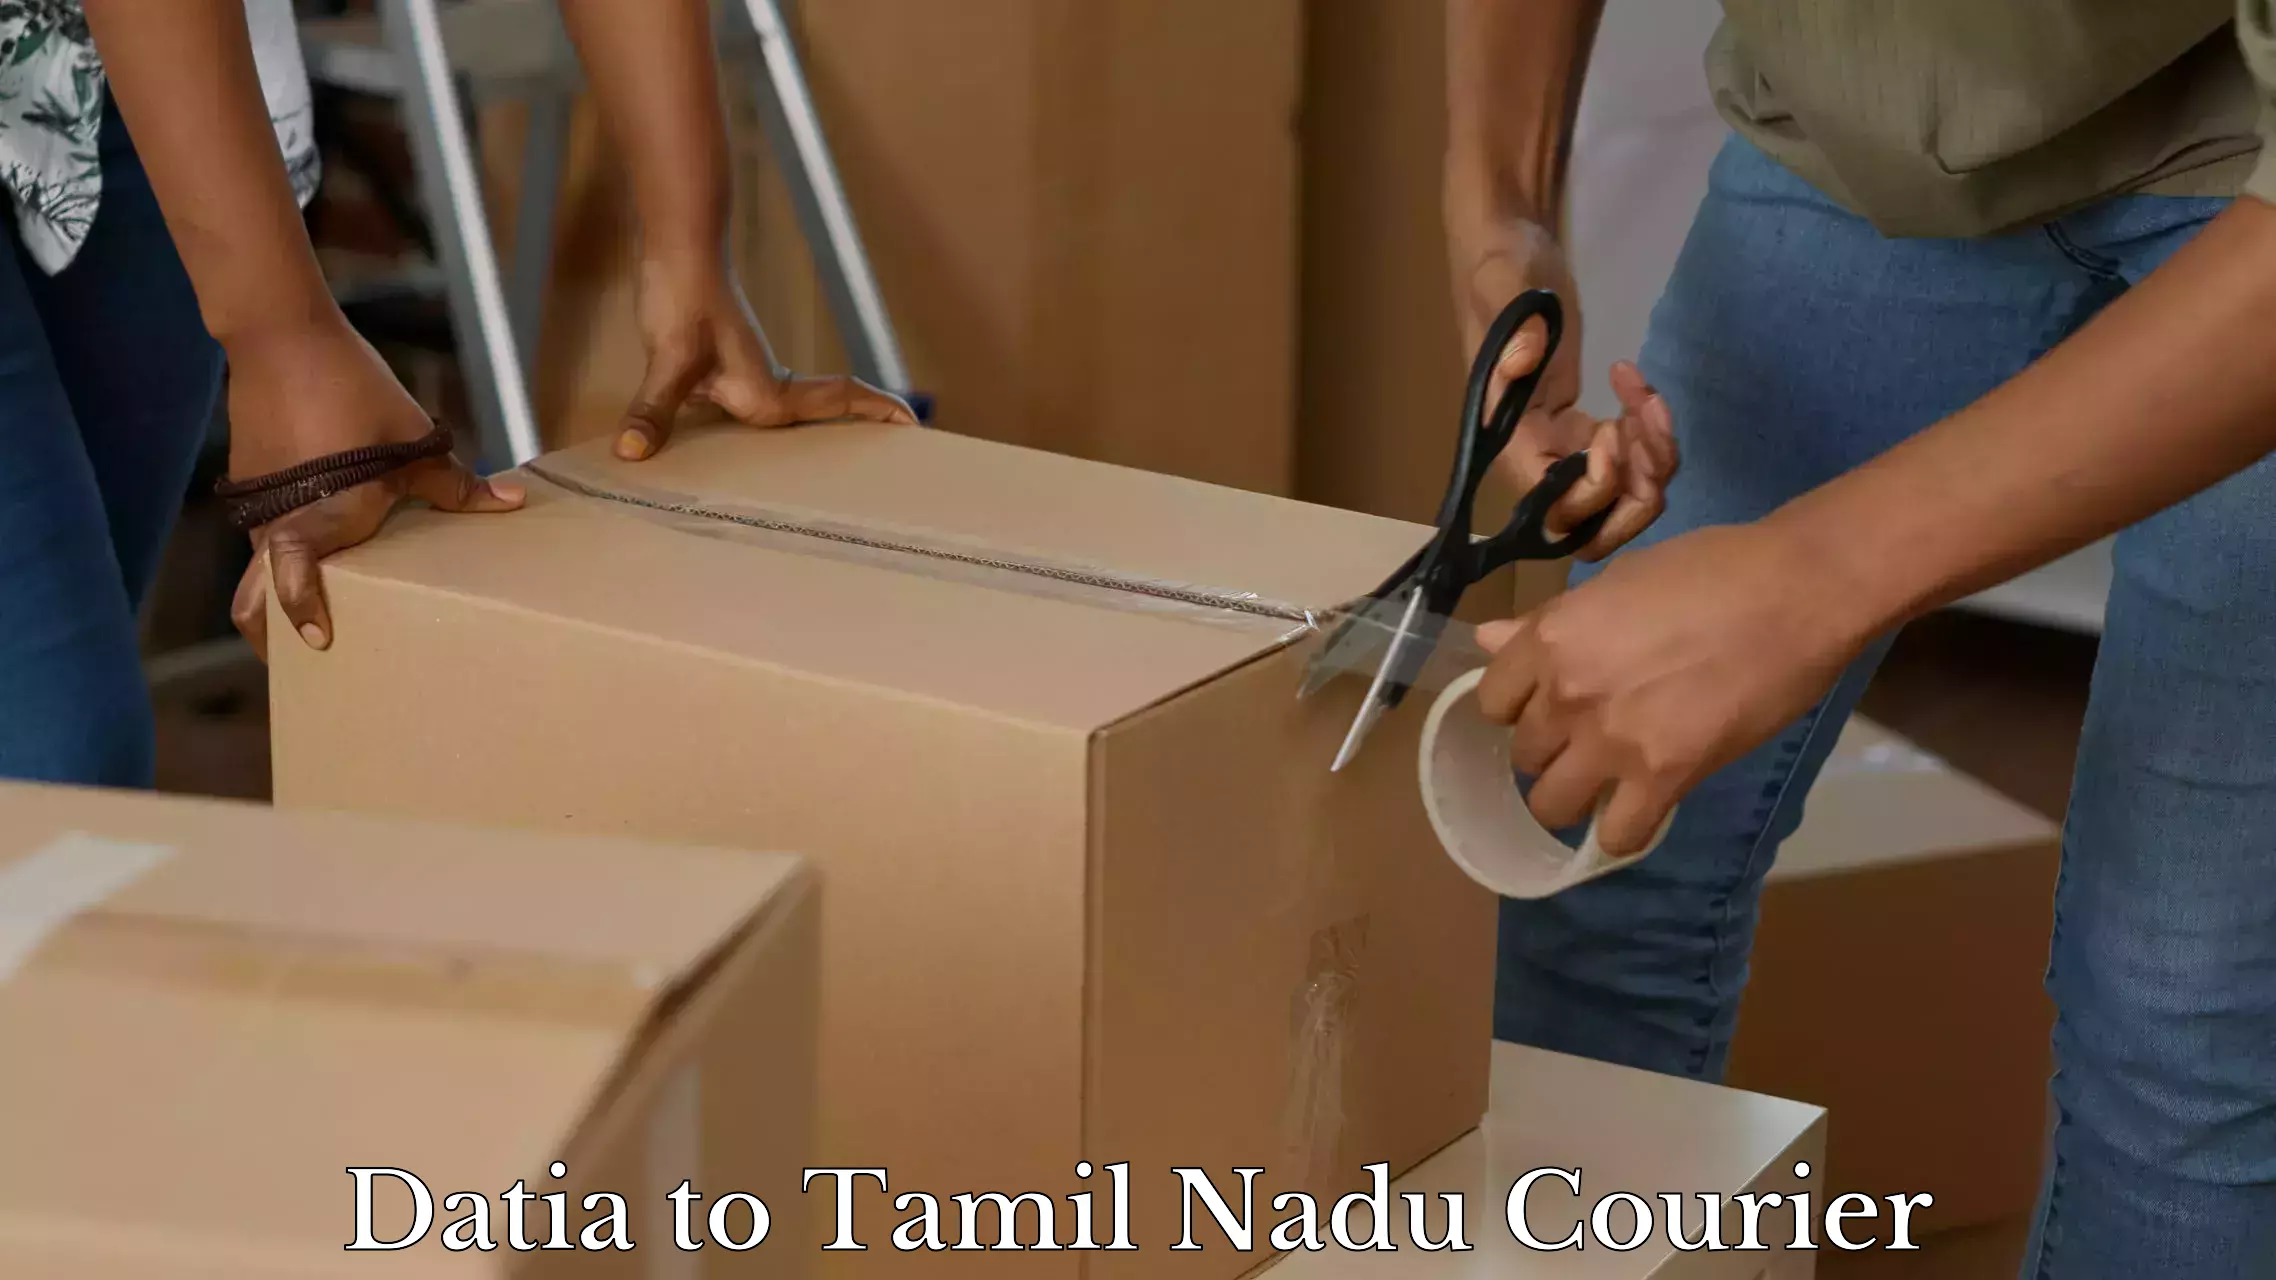 Urgent luggage shipment Datia to Tamil Nadu